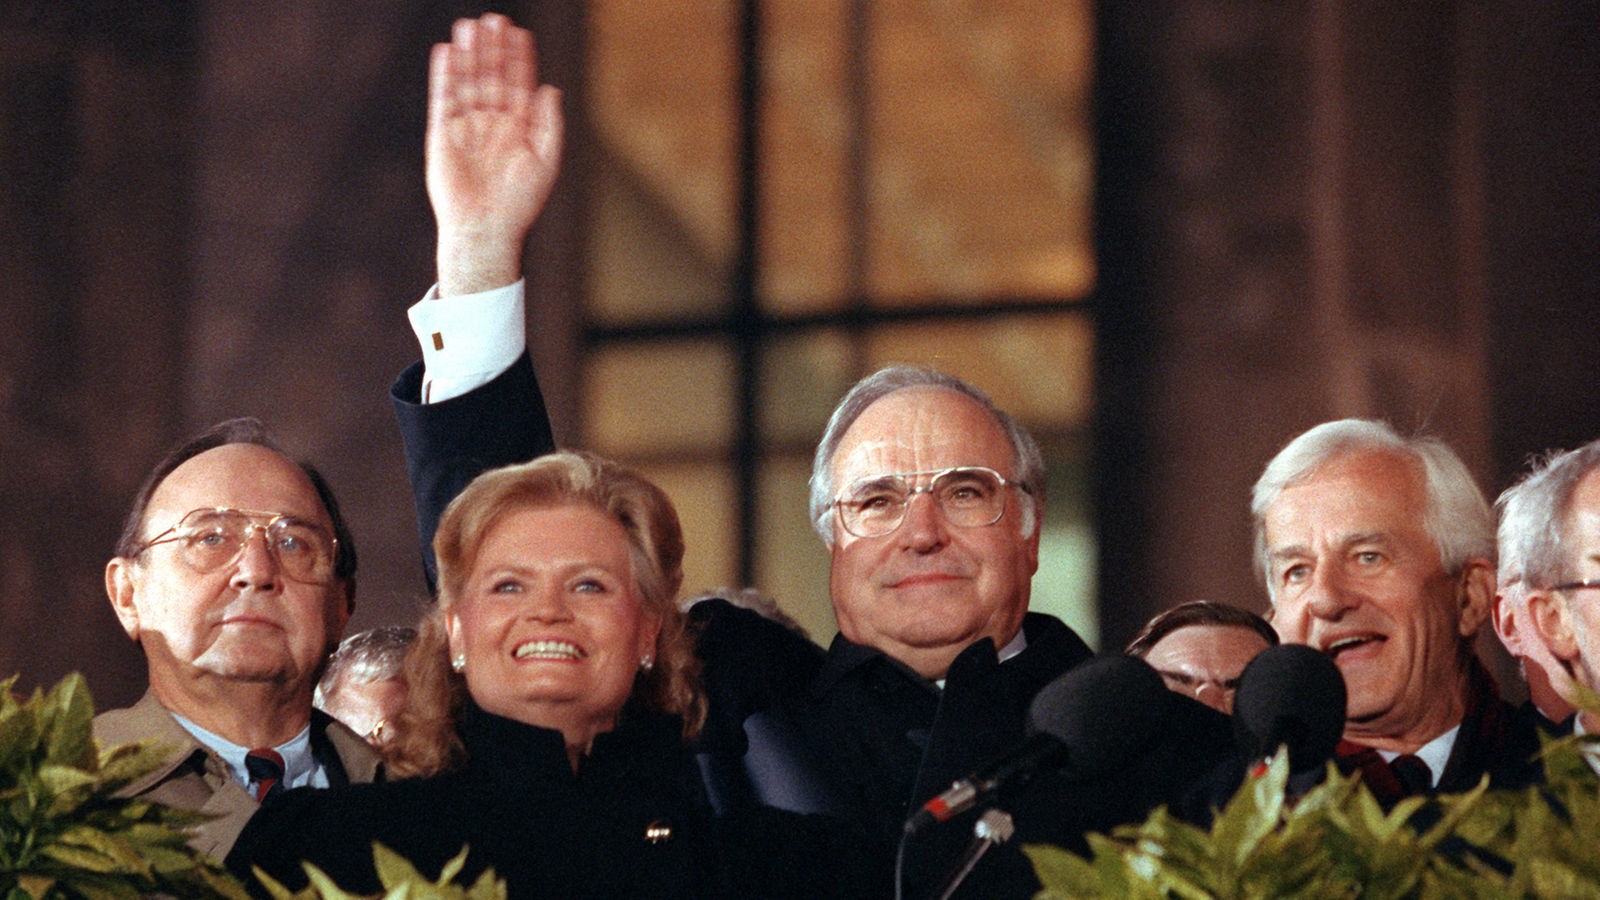 Helmut und Hannelore Kohl mit weiteren Politikern 1990 vor dem Reichstag